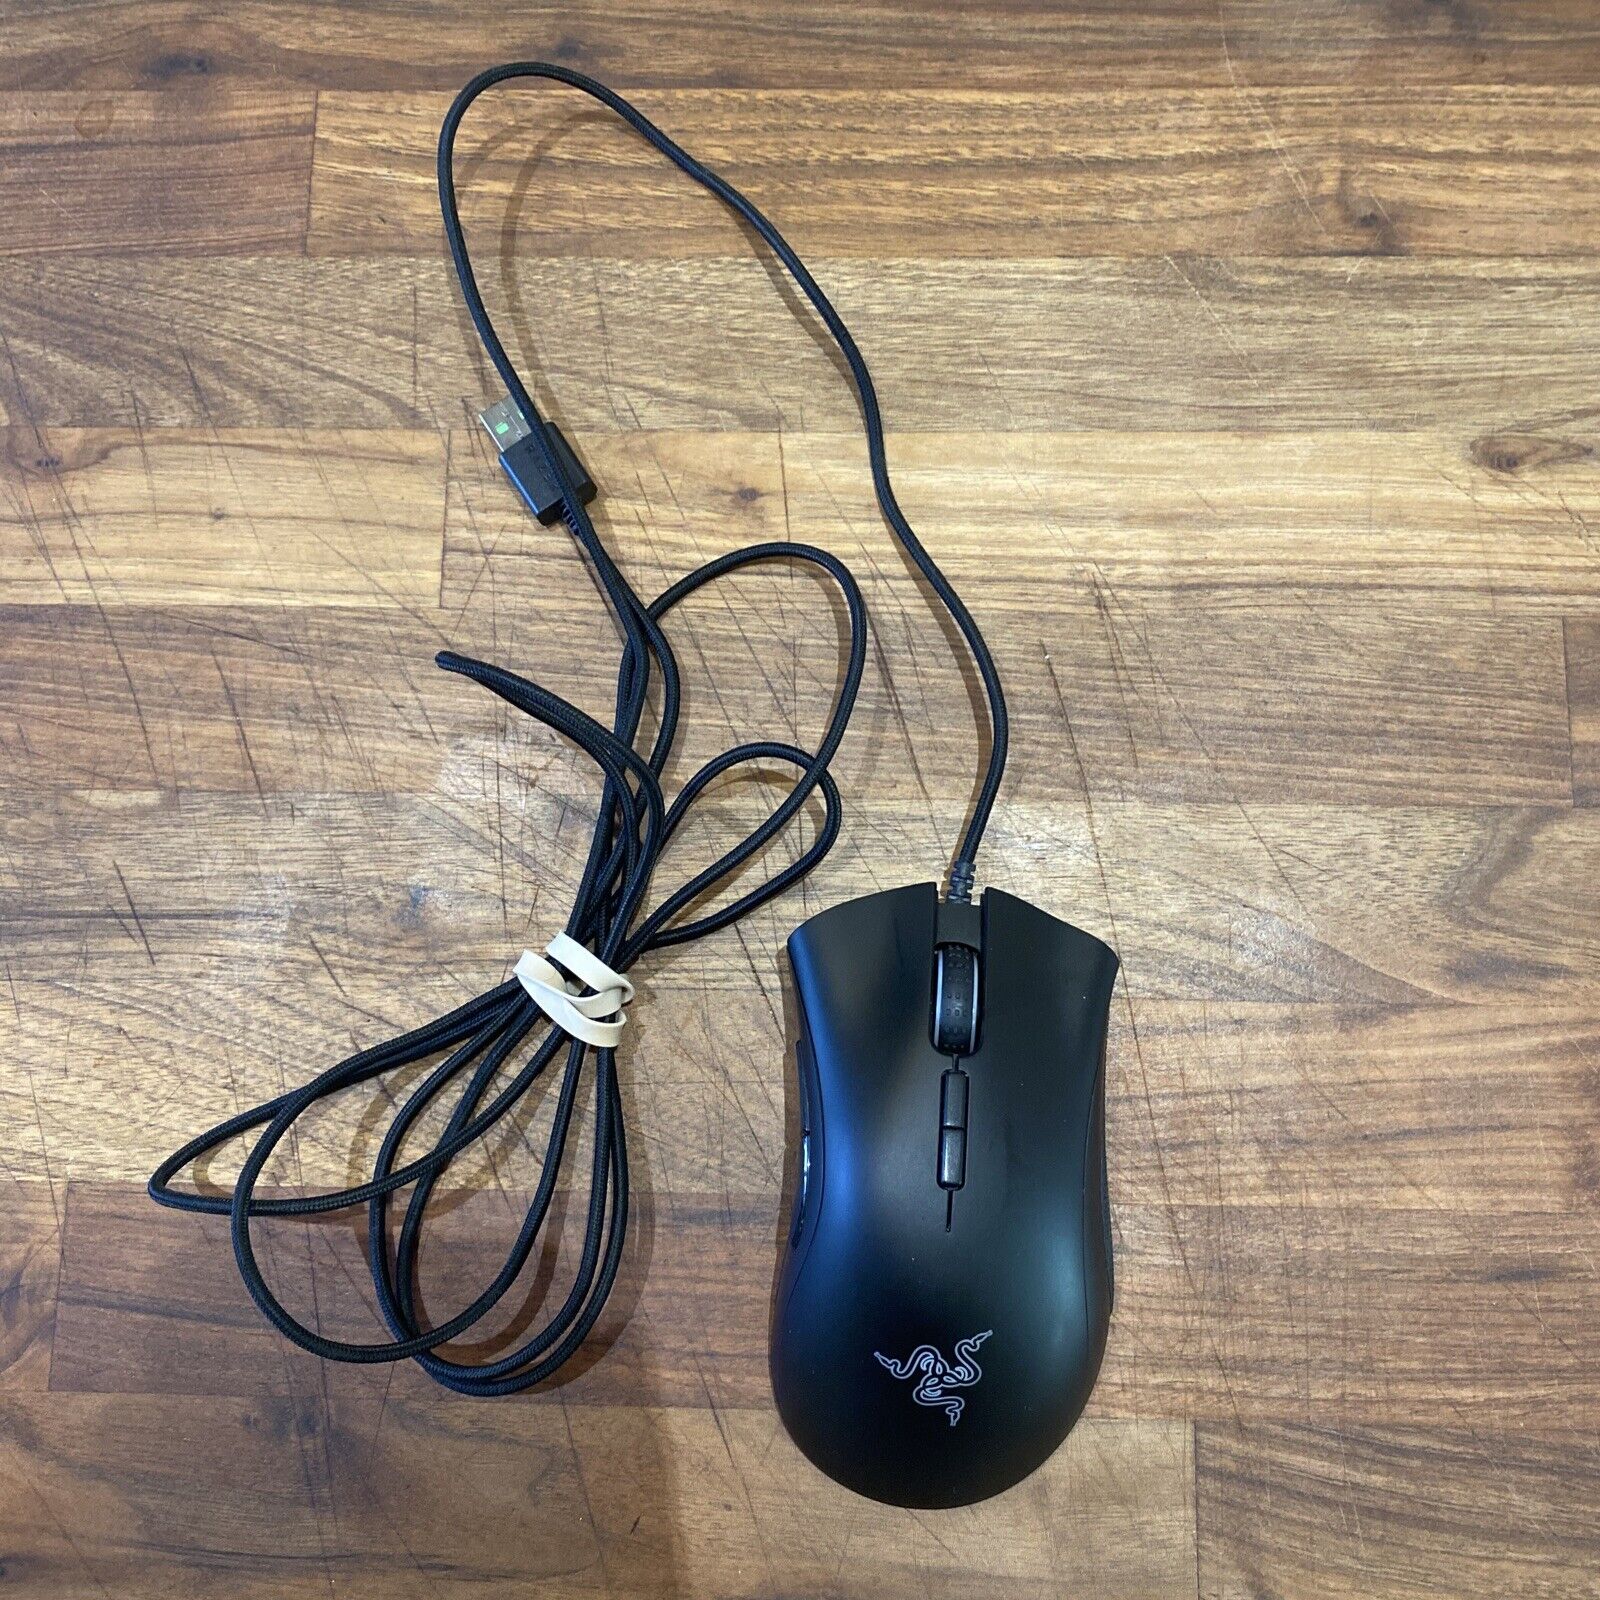 Razer Deathadder Elite Wired Mouse RZ01-0201 TESTING/WORKING